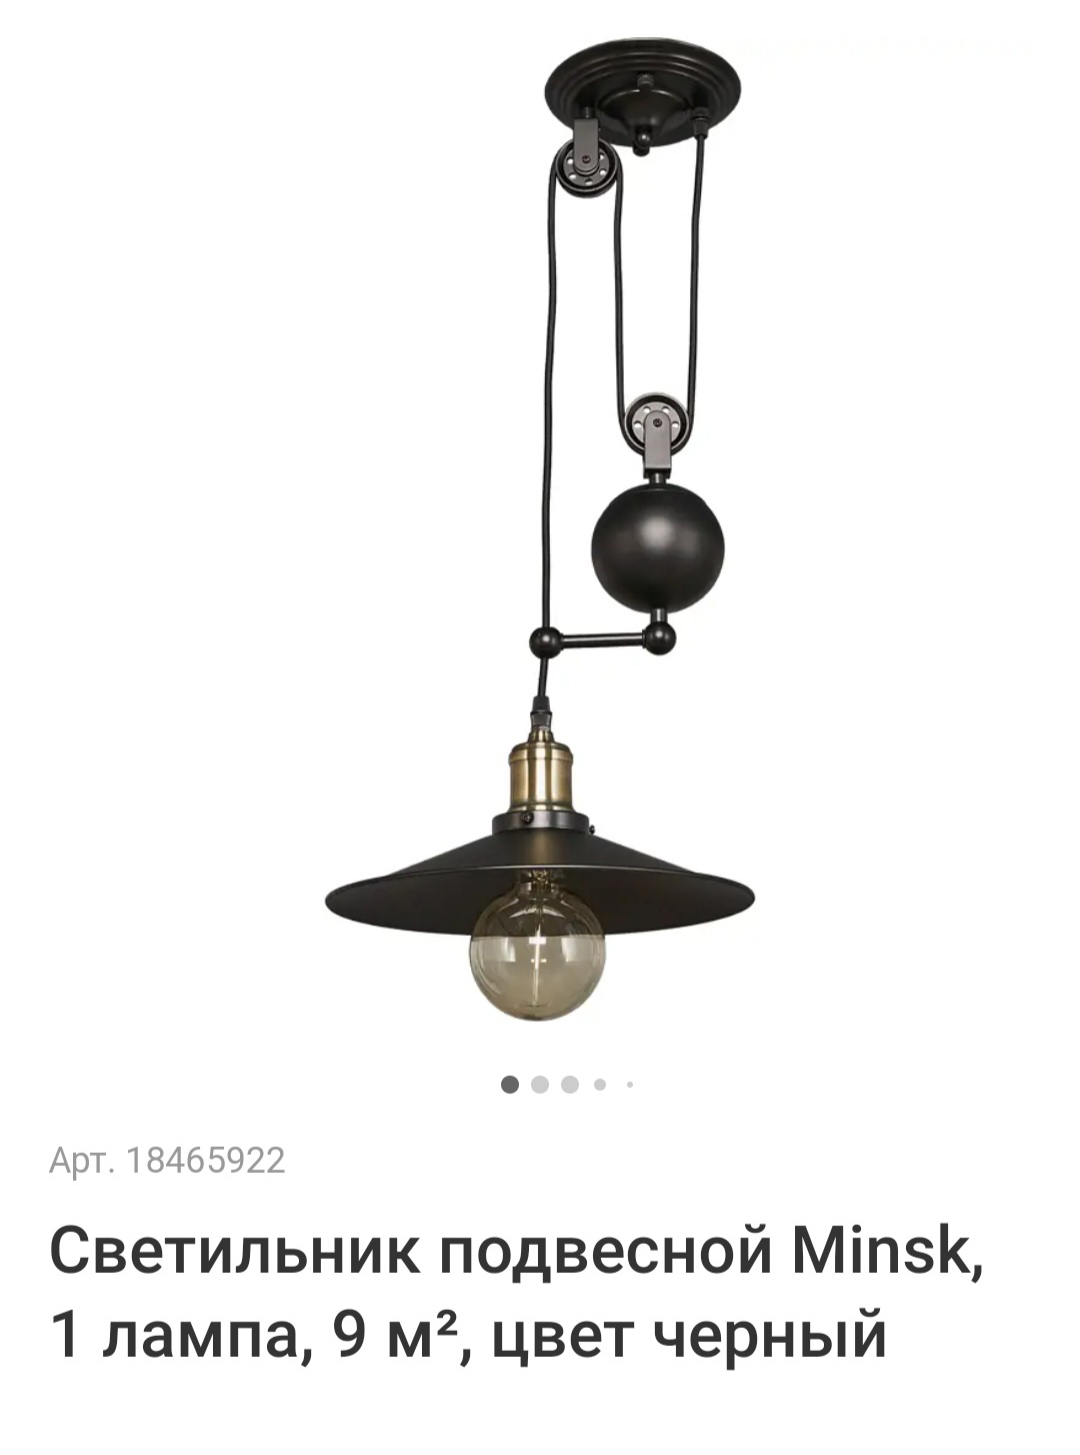 Нашел похожую люстру в «Леруа Мерлене» за 3500 ₽, еще купил два бра за 4500 ₽. Источник: leroymerlin.ru